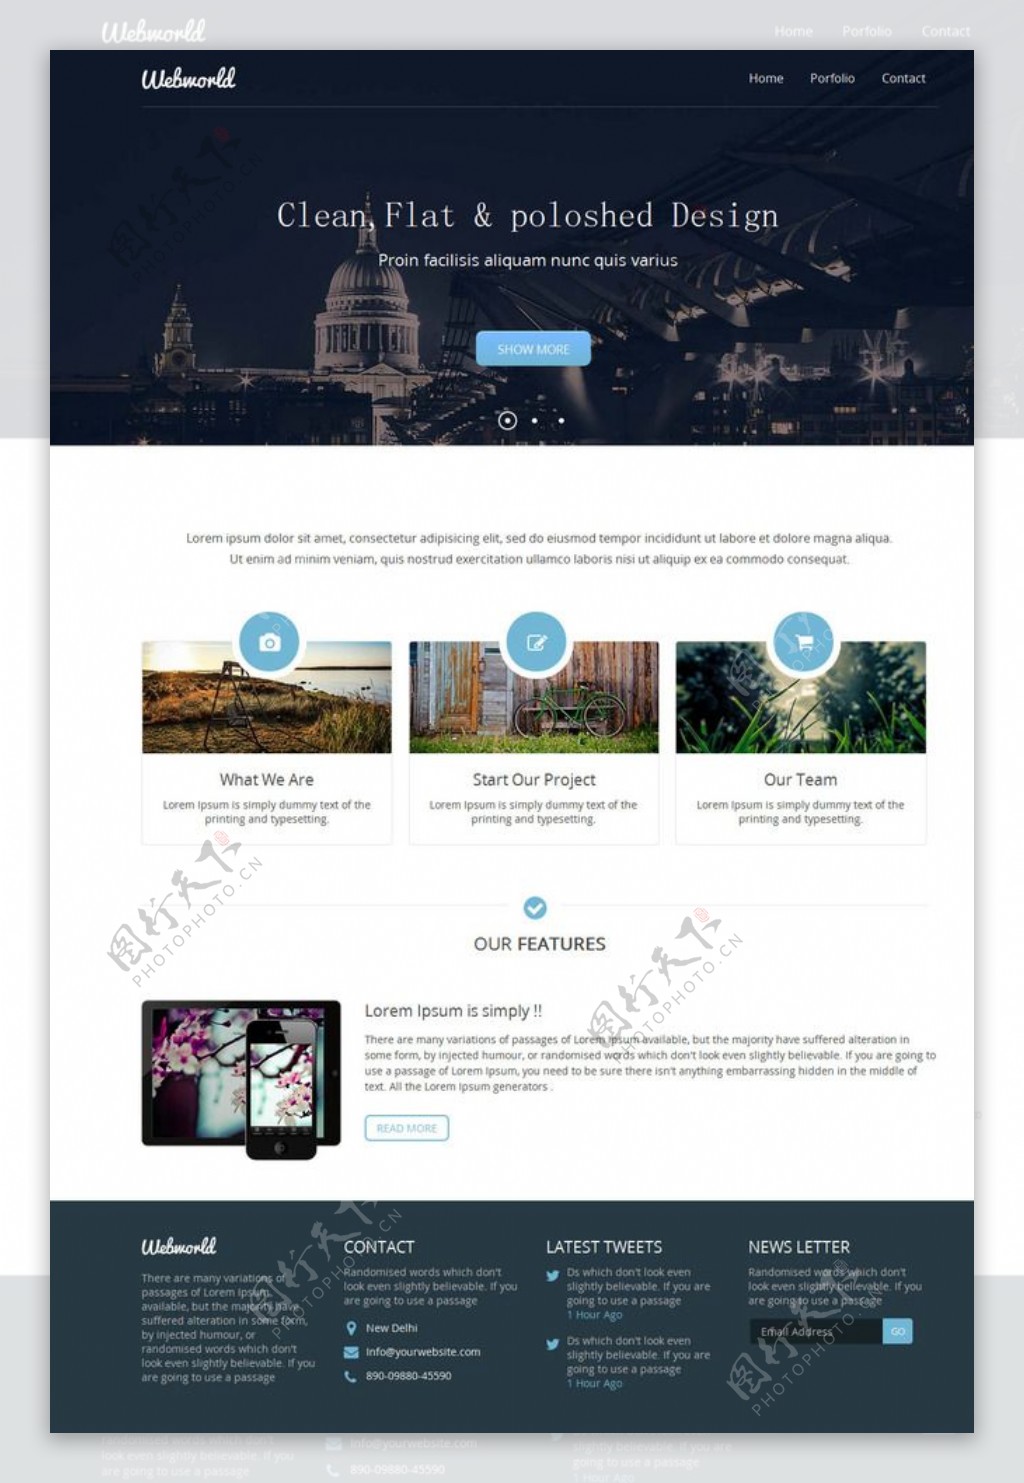 美国白宫建筑网站模板图片